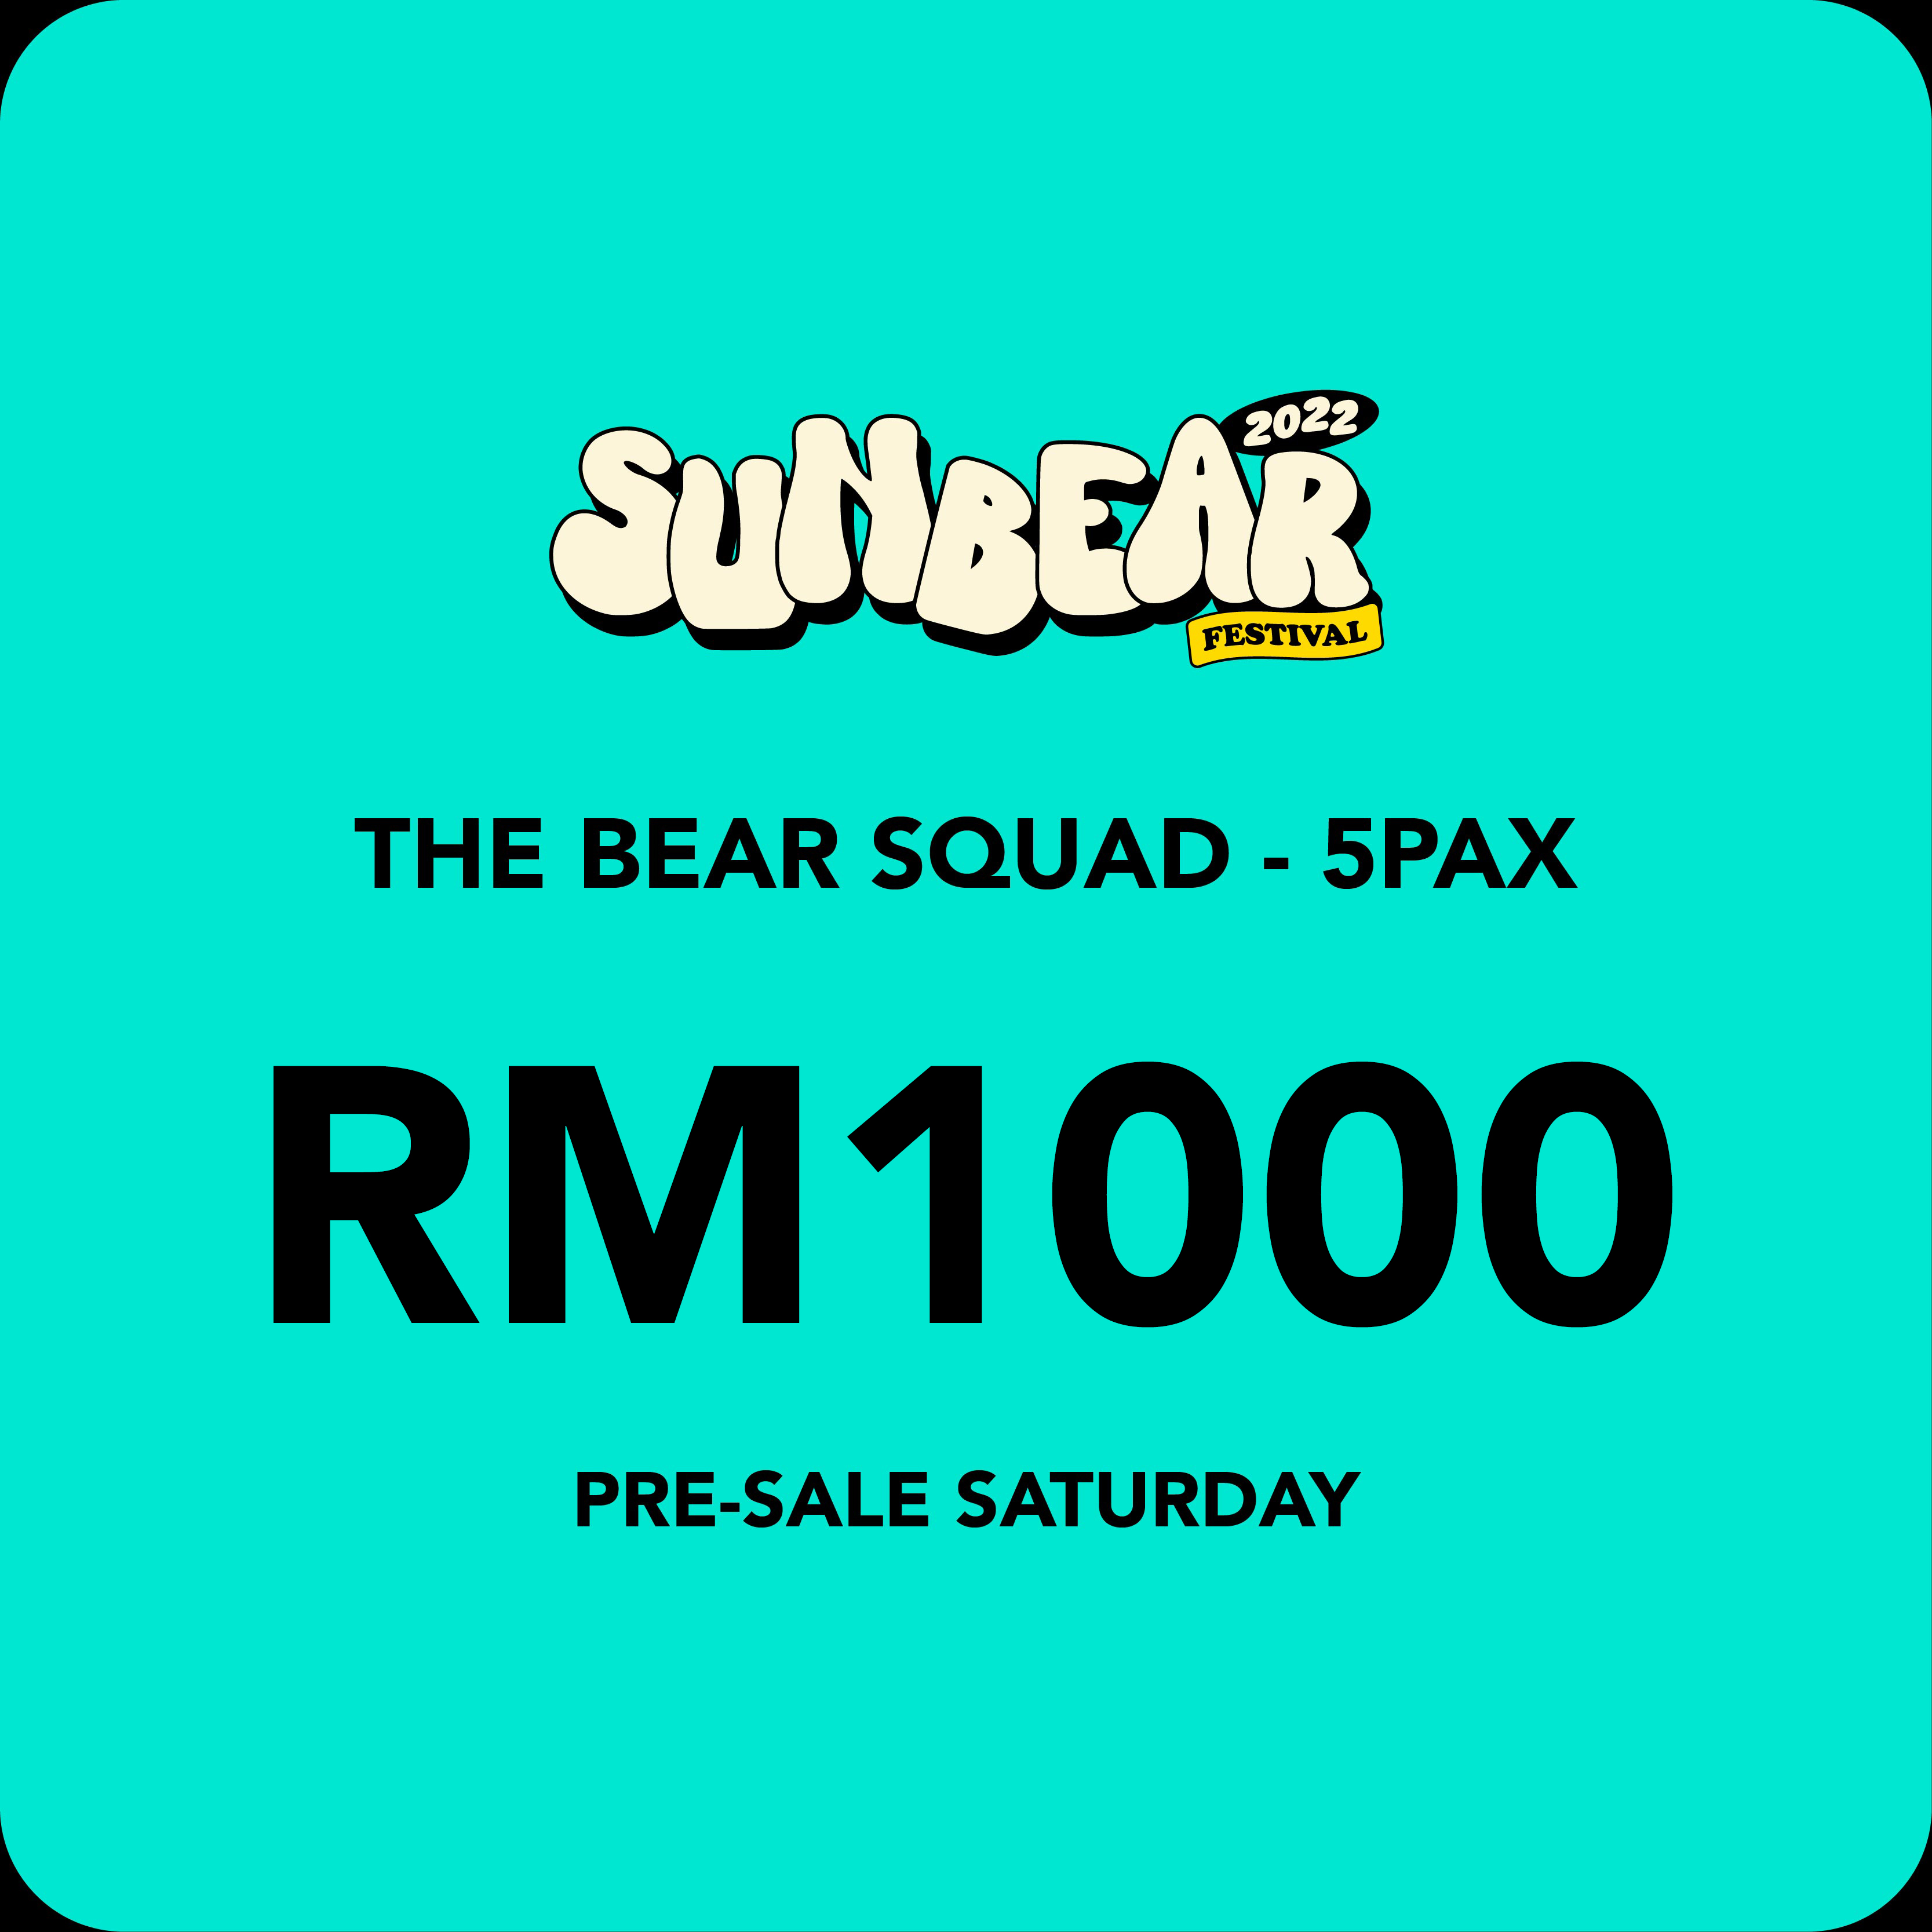 THE BEAR SQUAD PRE-SALE SATURDAY - 5 PAX